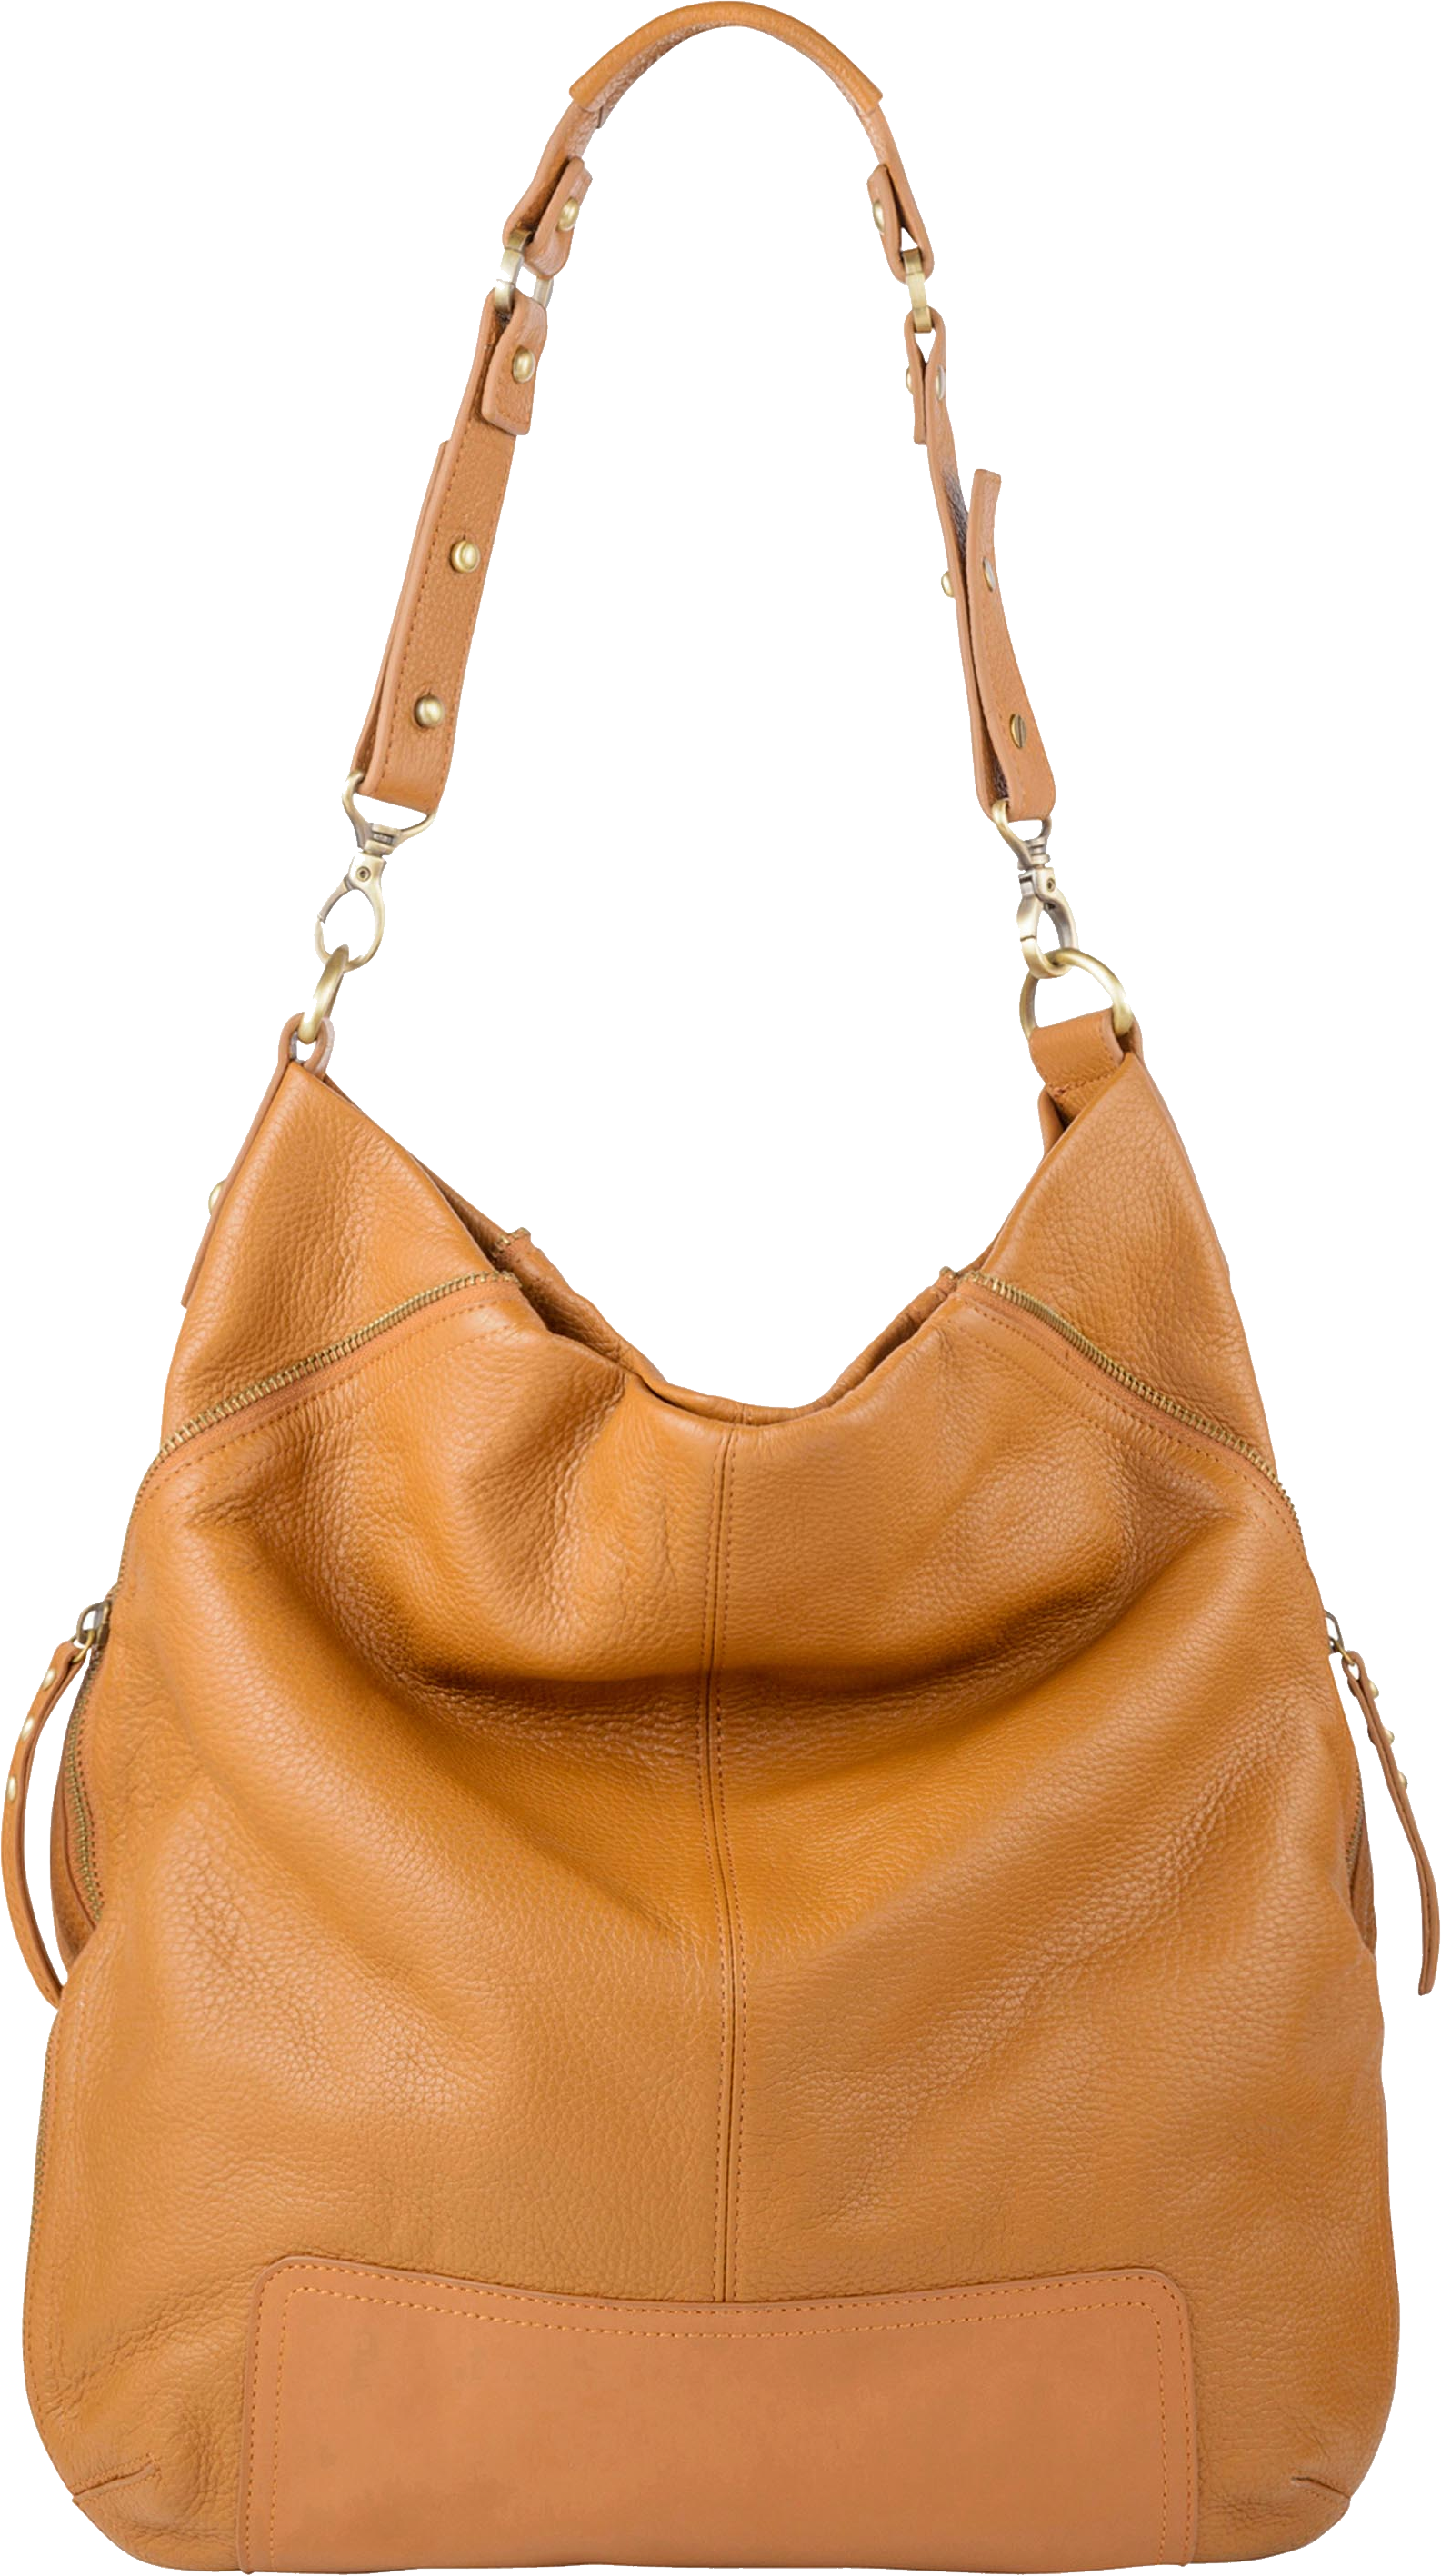 Leather Bag Transparent Image